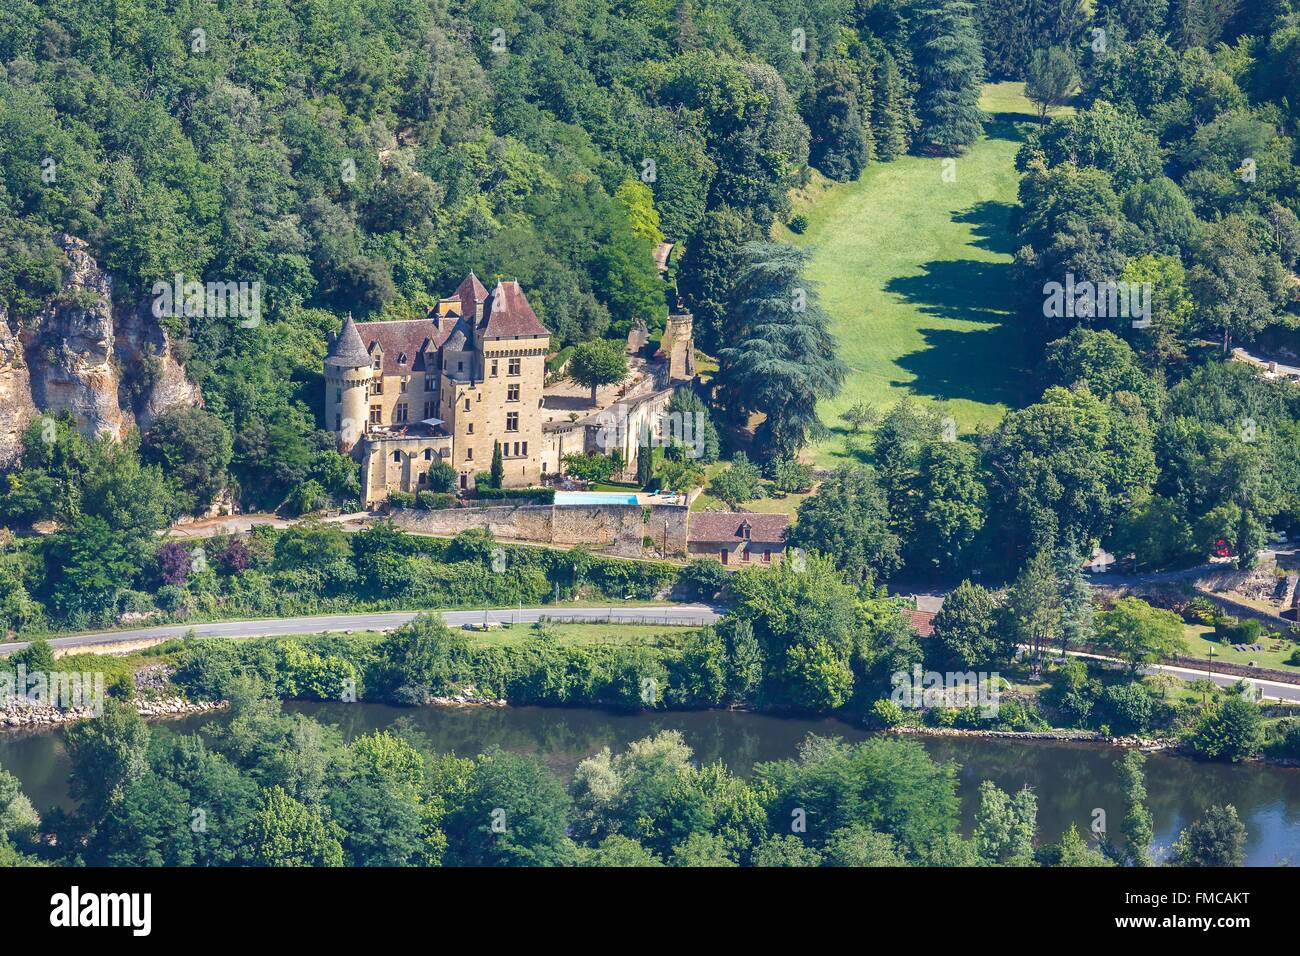 France, Dordogne, La Roque Gageac, labelled Les Plus Beaux Villages de France (The Most Beautiful Villages of France), the Stock Photo